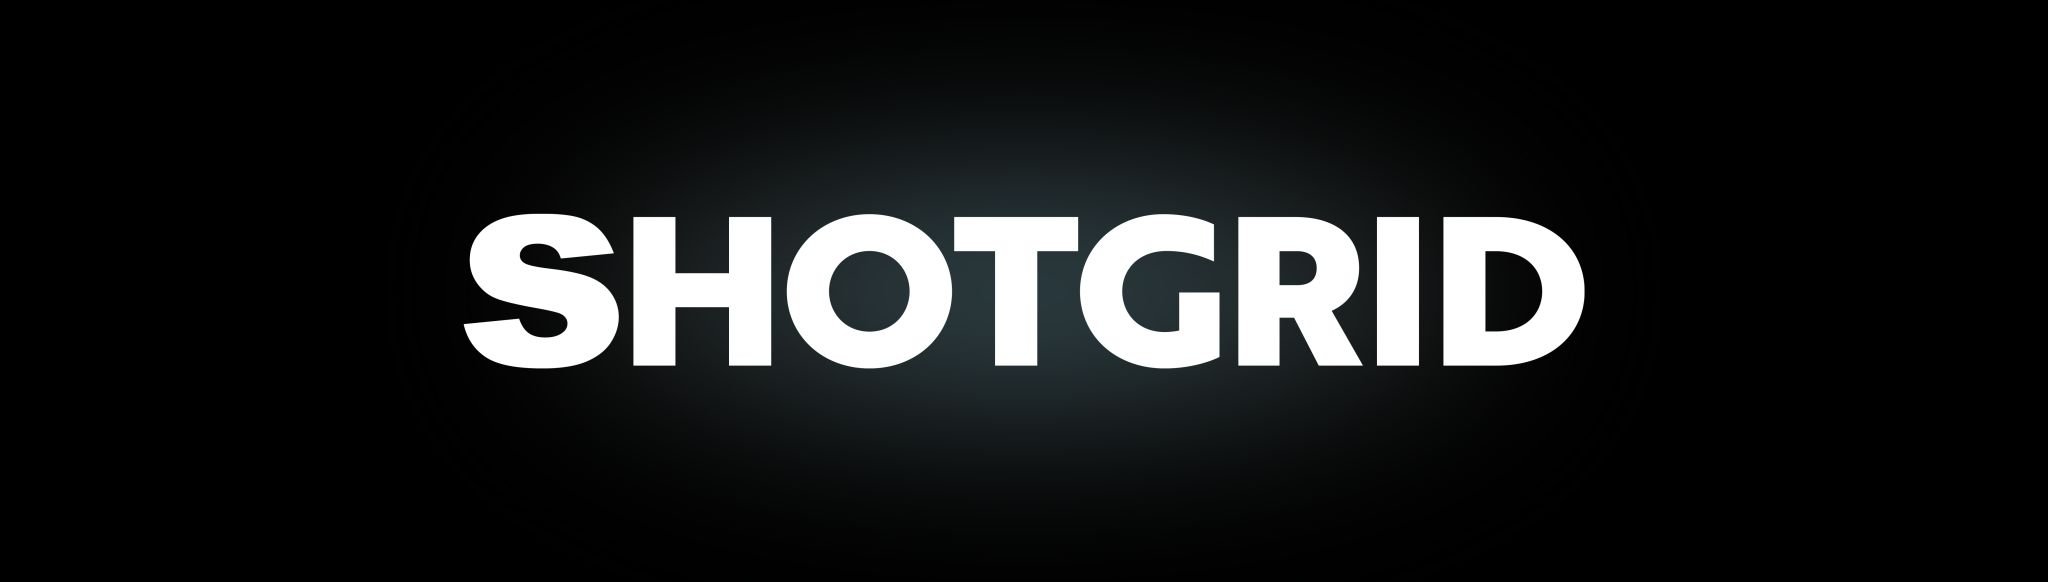 Shotgrid logo